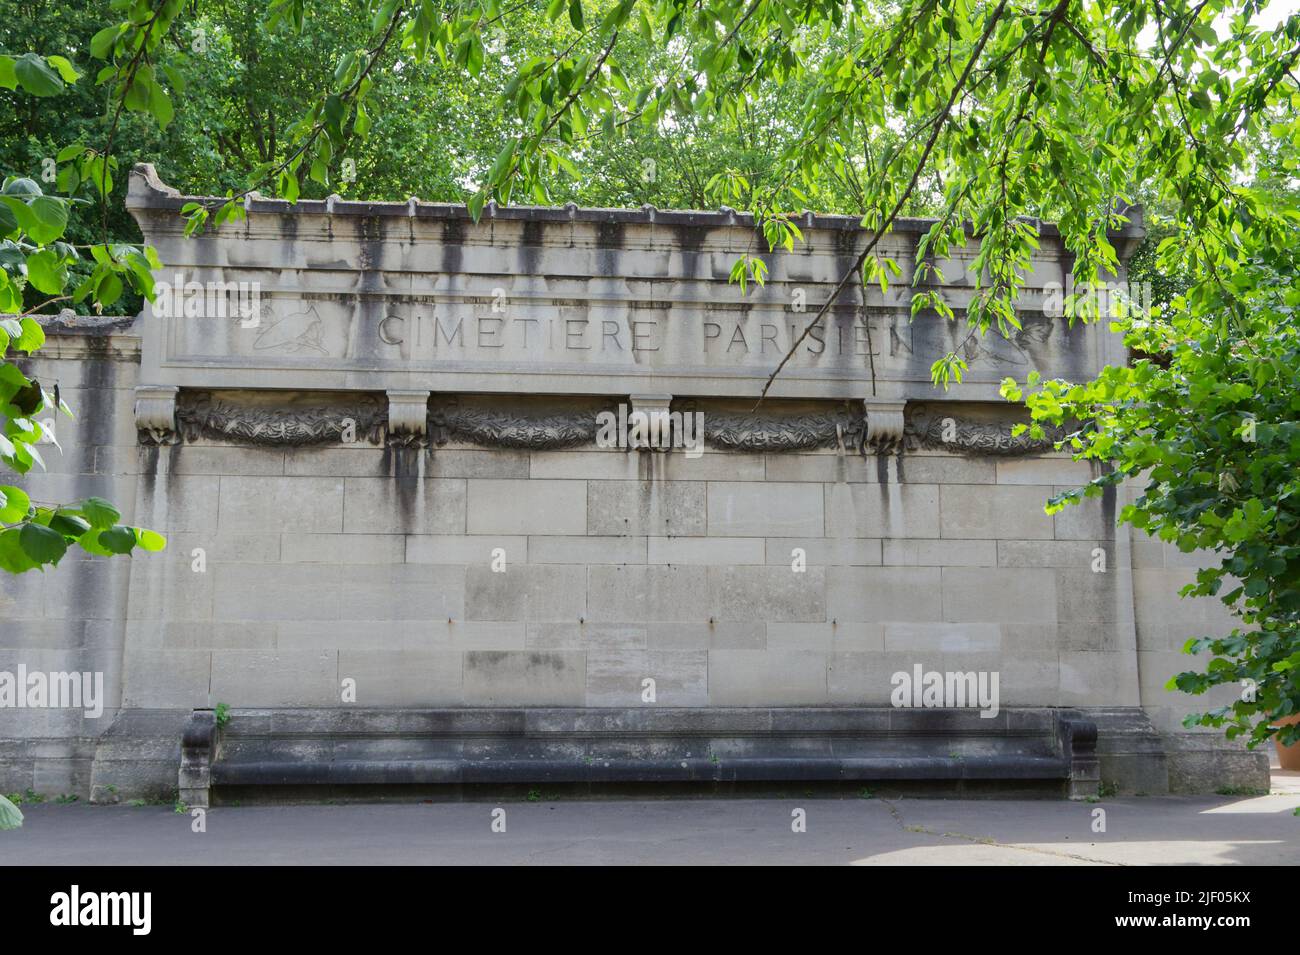 Bagneux Cemetery of Paris (Cimetiere Parisien) - Entrance - Bagneux, Paris, Hauts-de-Seine, France Stock Photo